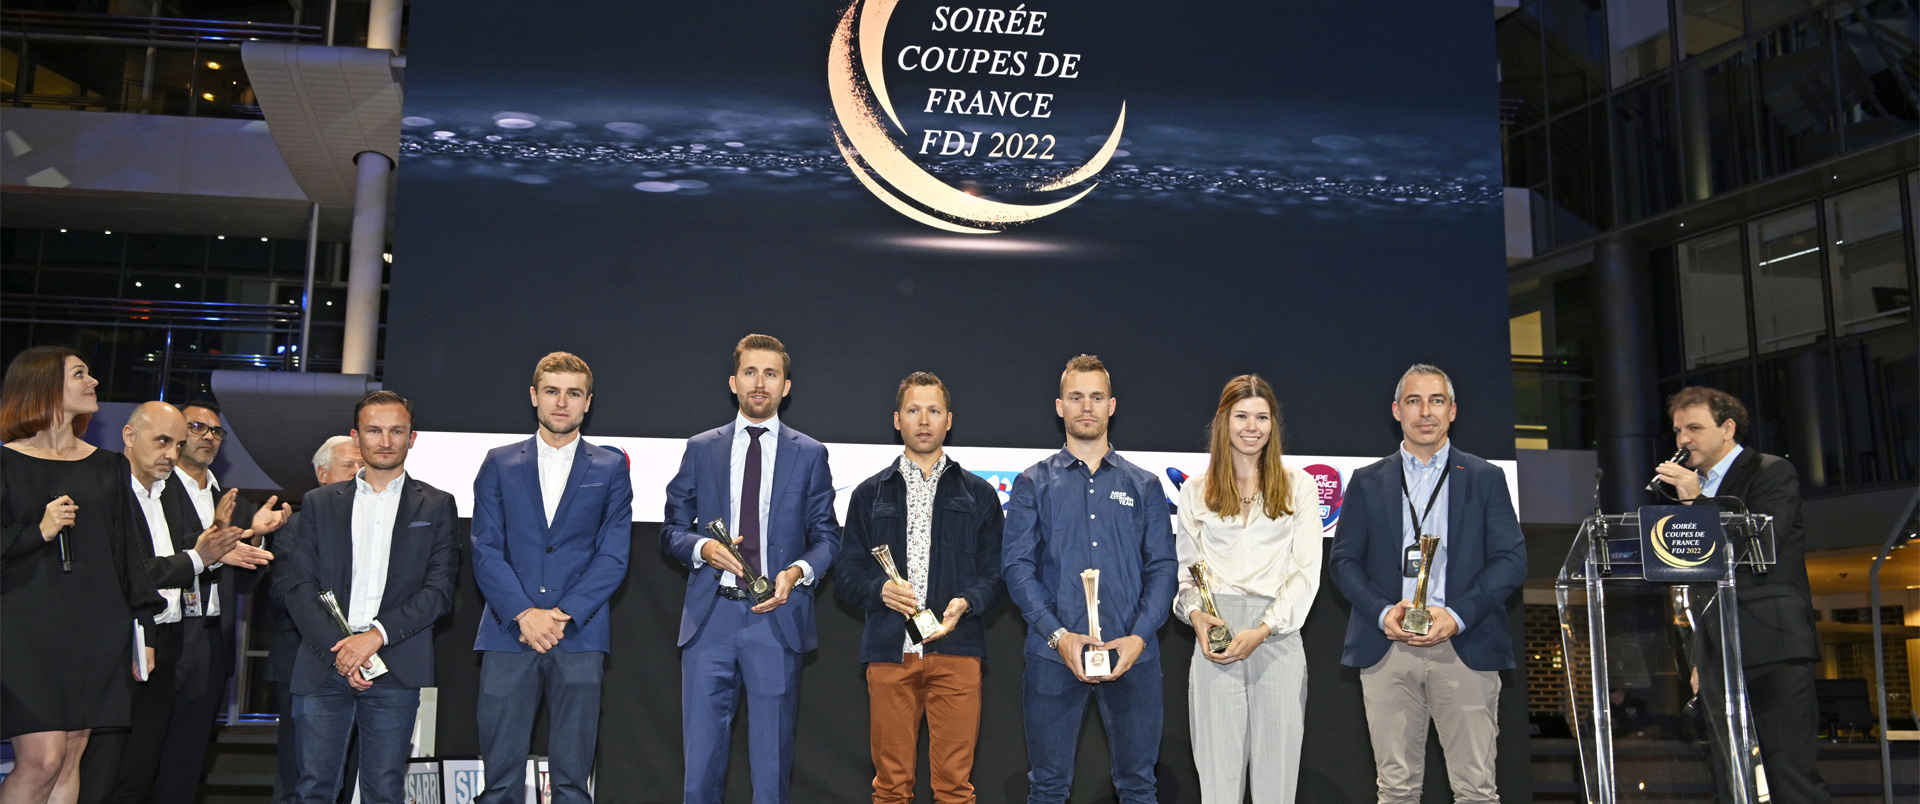 Cérémonie de remise des trophées des Coupes de France FDJ 2022